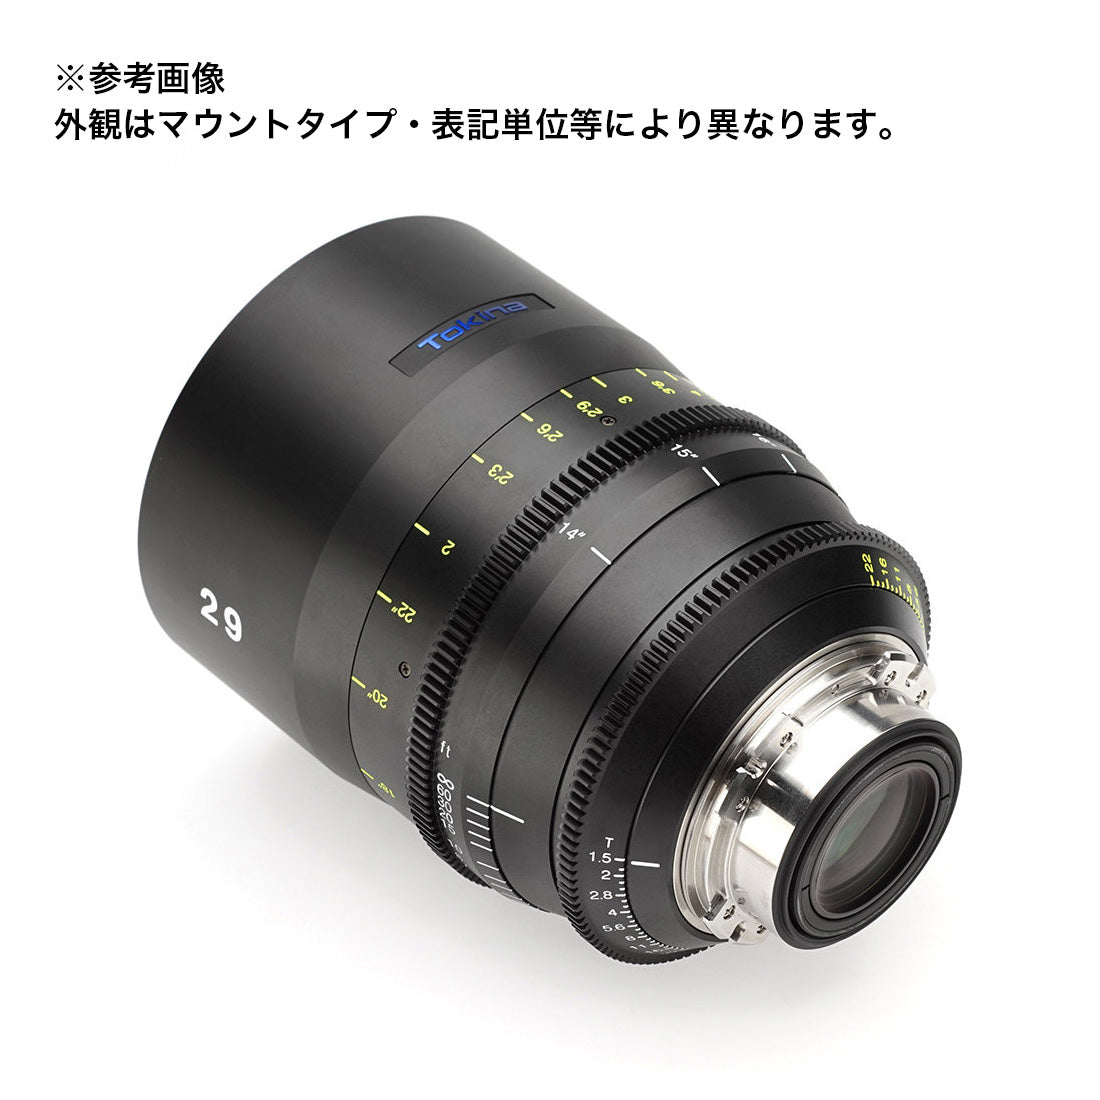 Tokina(トキナー) シネマプライムレンズ VISTA 29mm T1.5CINEMA LENS EFマウント メートル表記 [264249]